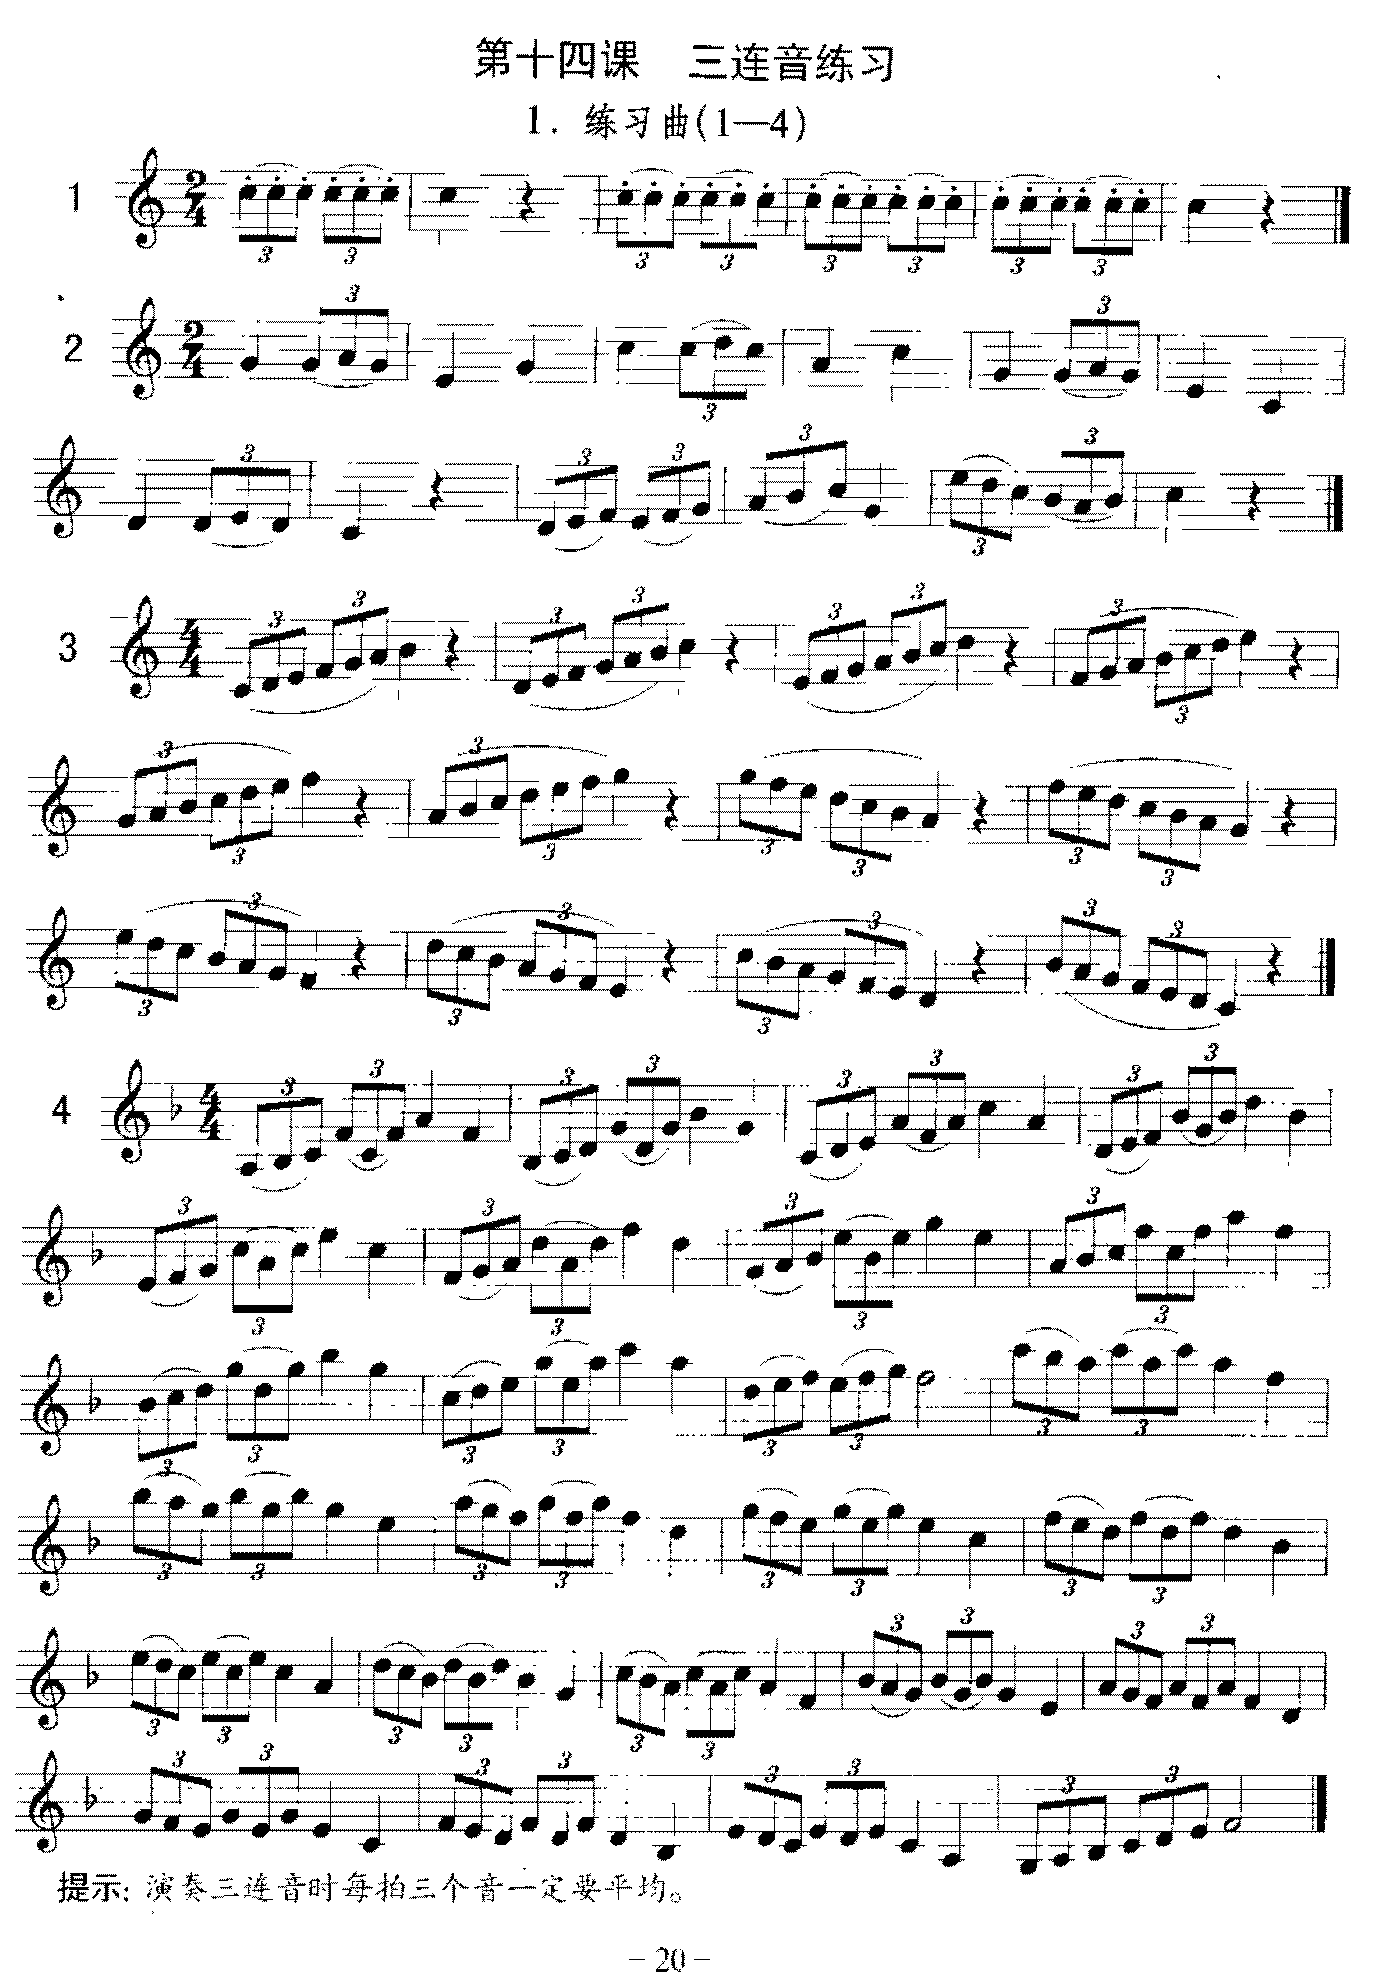 单簧管三连音练习曲《跟从我/兰玲花》